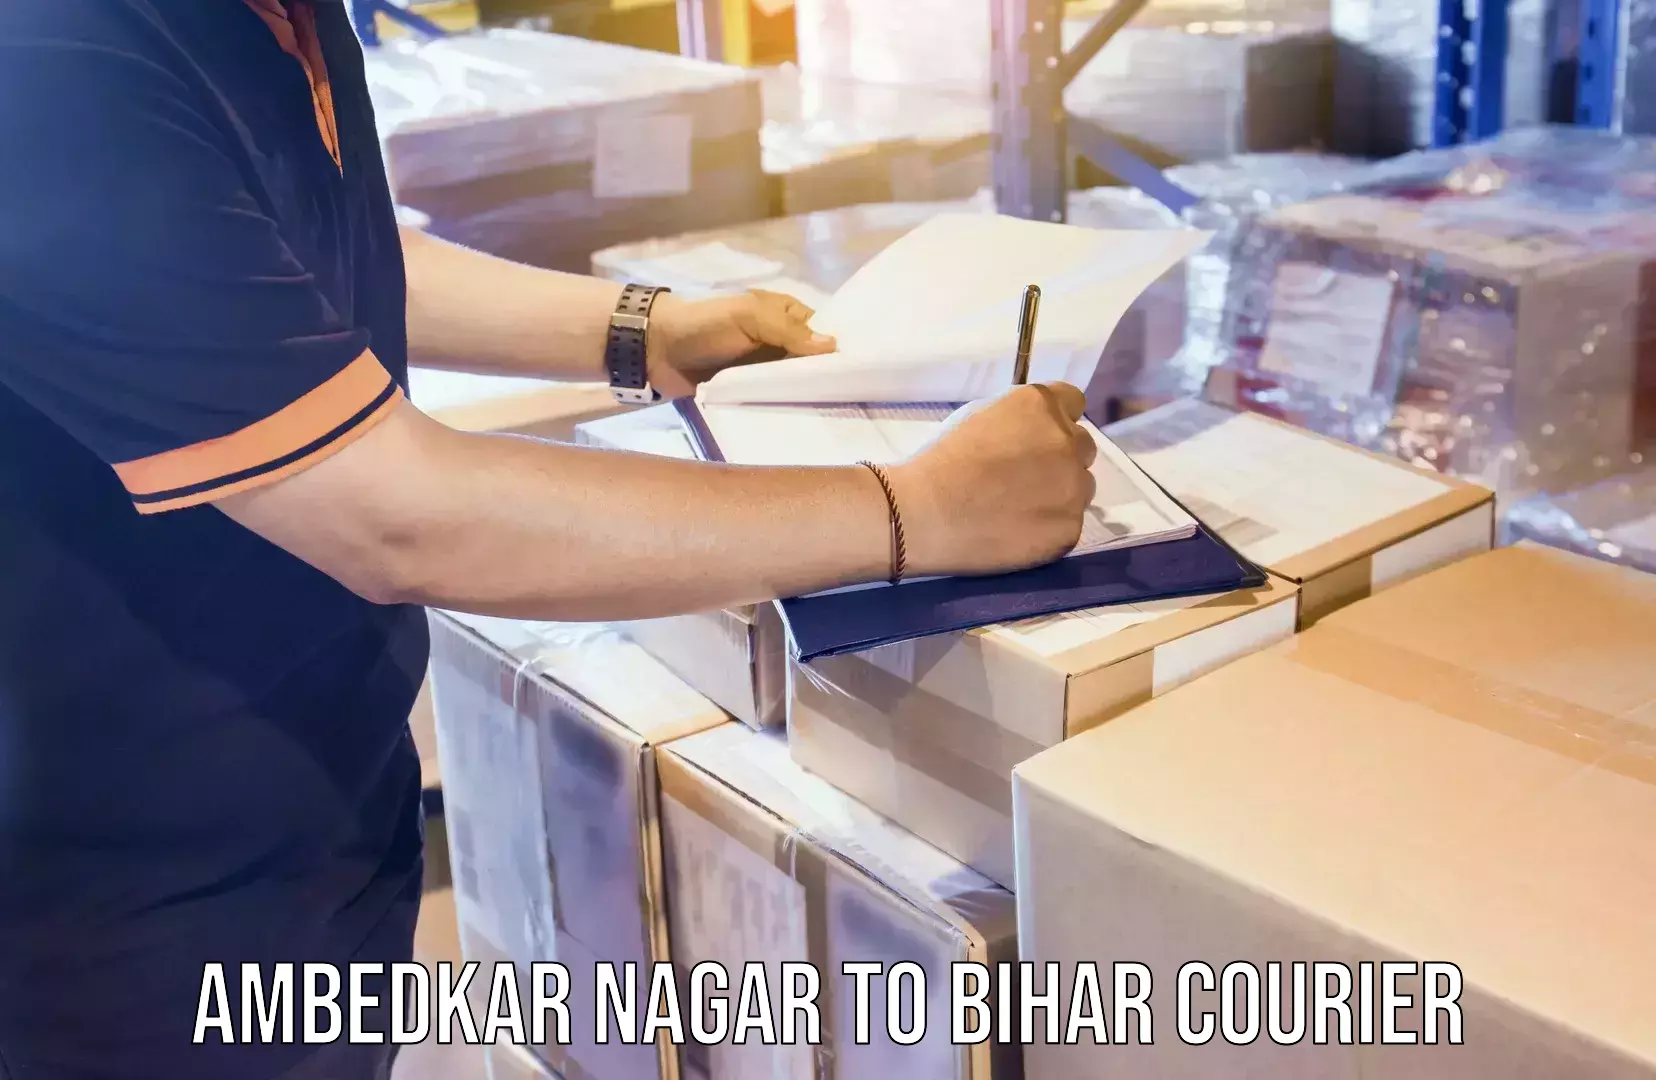 24/7 shipping services in Ambedkar Nagar to Bihar